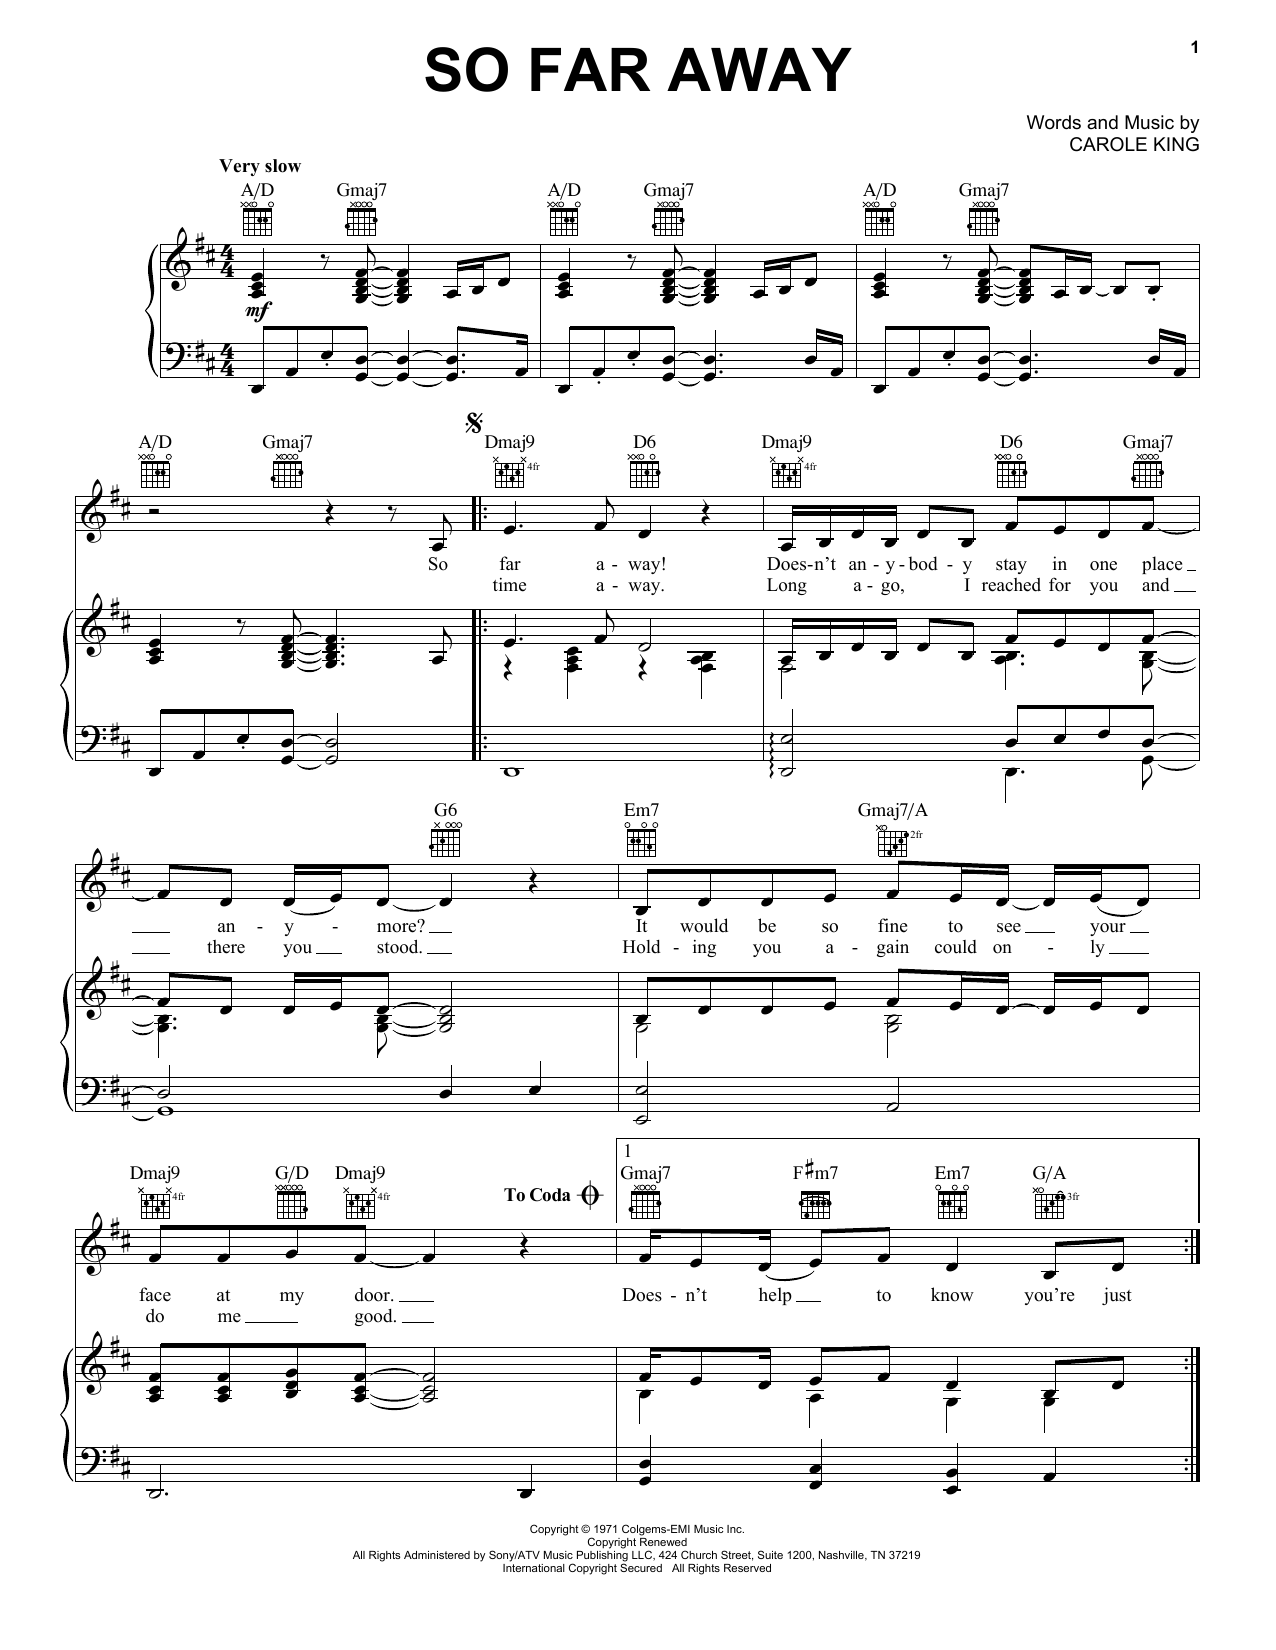 Carole King So Far Away Sheet Music Notes & Chords for Lyrics & Chords - Download or Print PDF